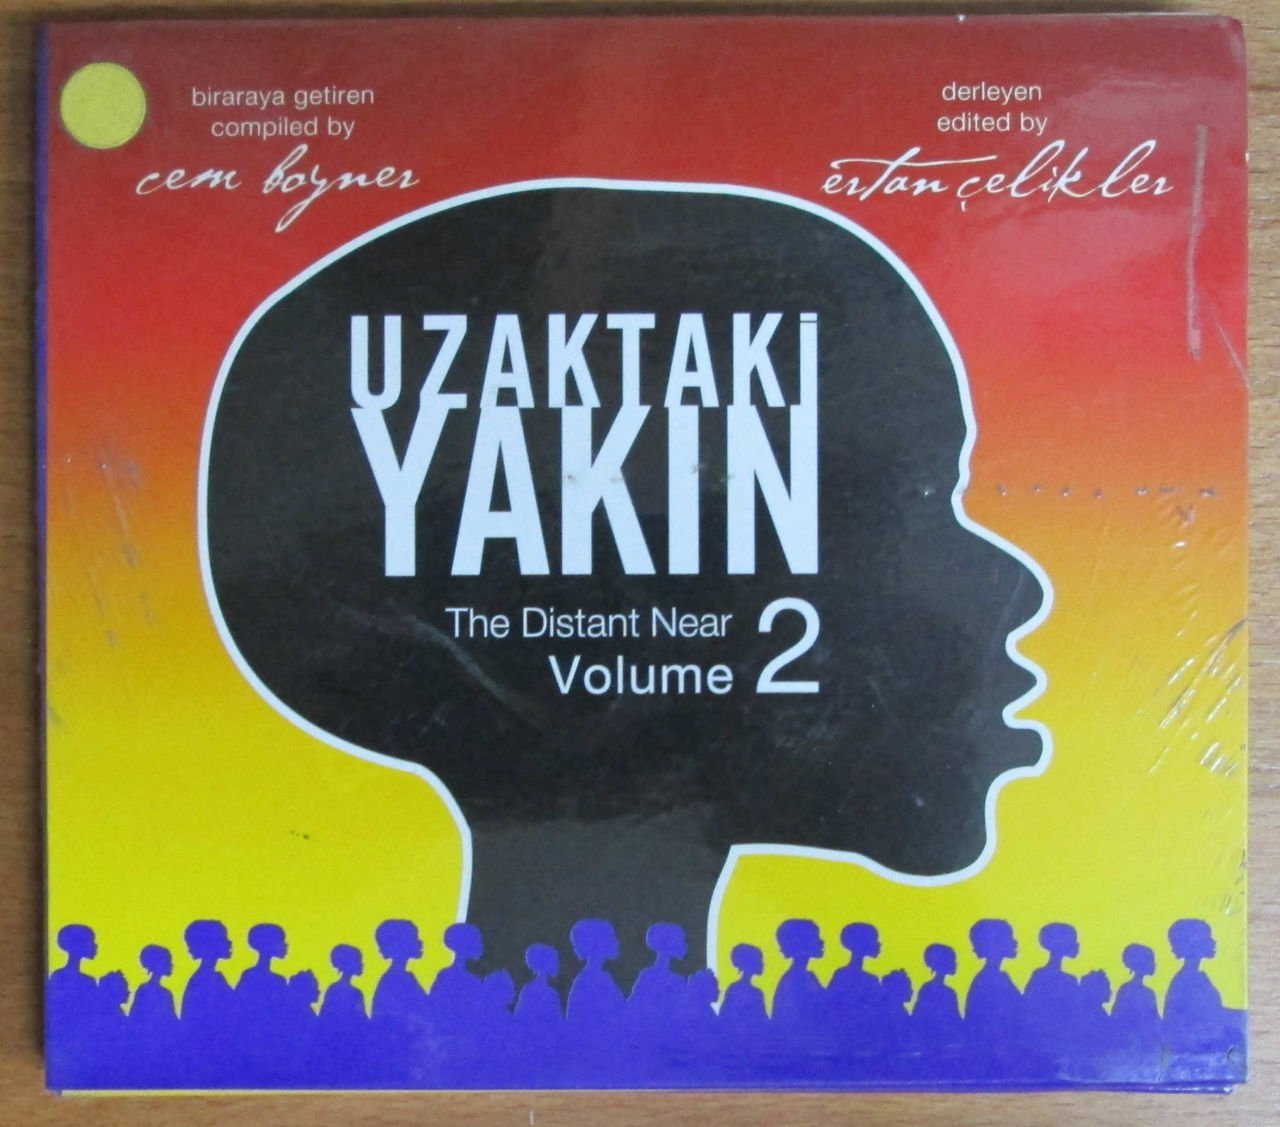 UZAKTAKİ YAKIN / THE DISTANT NEAR VOLUME 2 - CEM BOYNER ERTAN ÇELİKLER - CD AFRICAN MUSIC COMPILATION WORLD MUSIC 2.EL